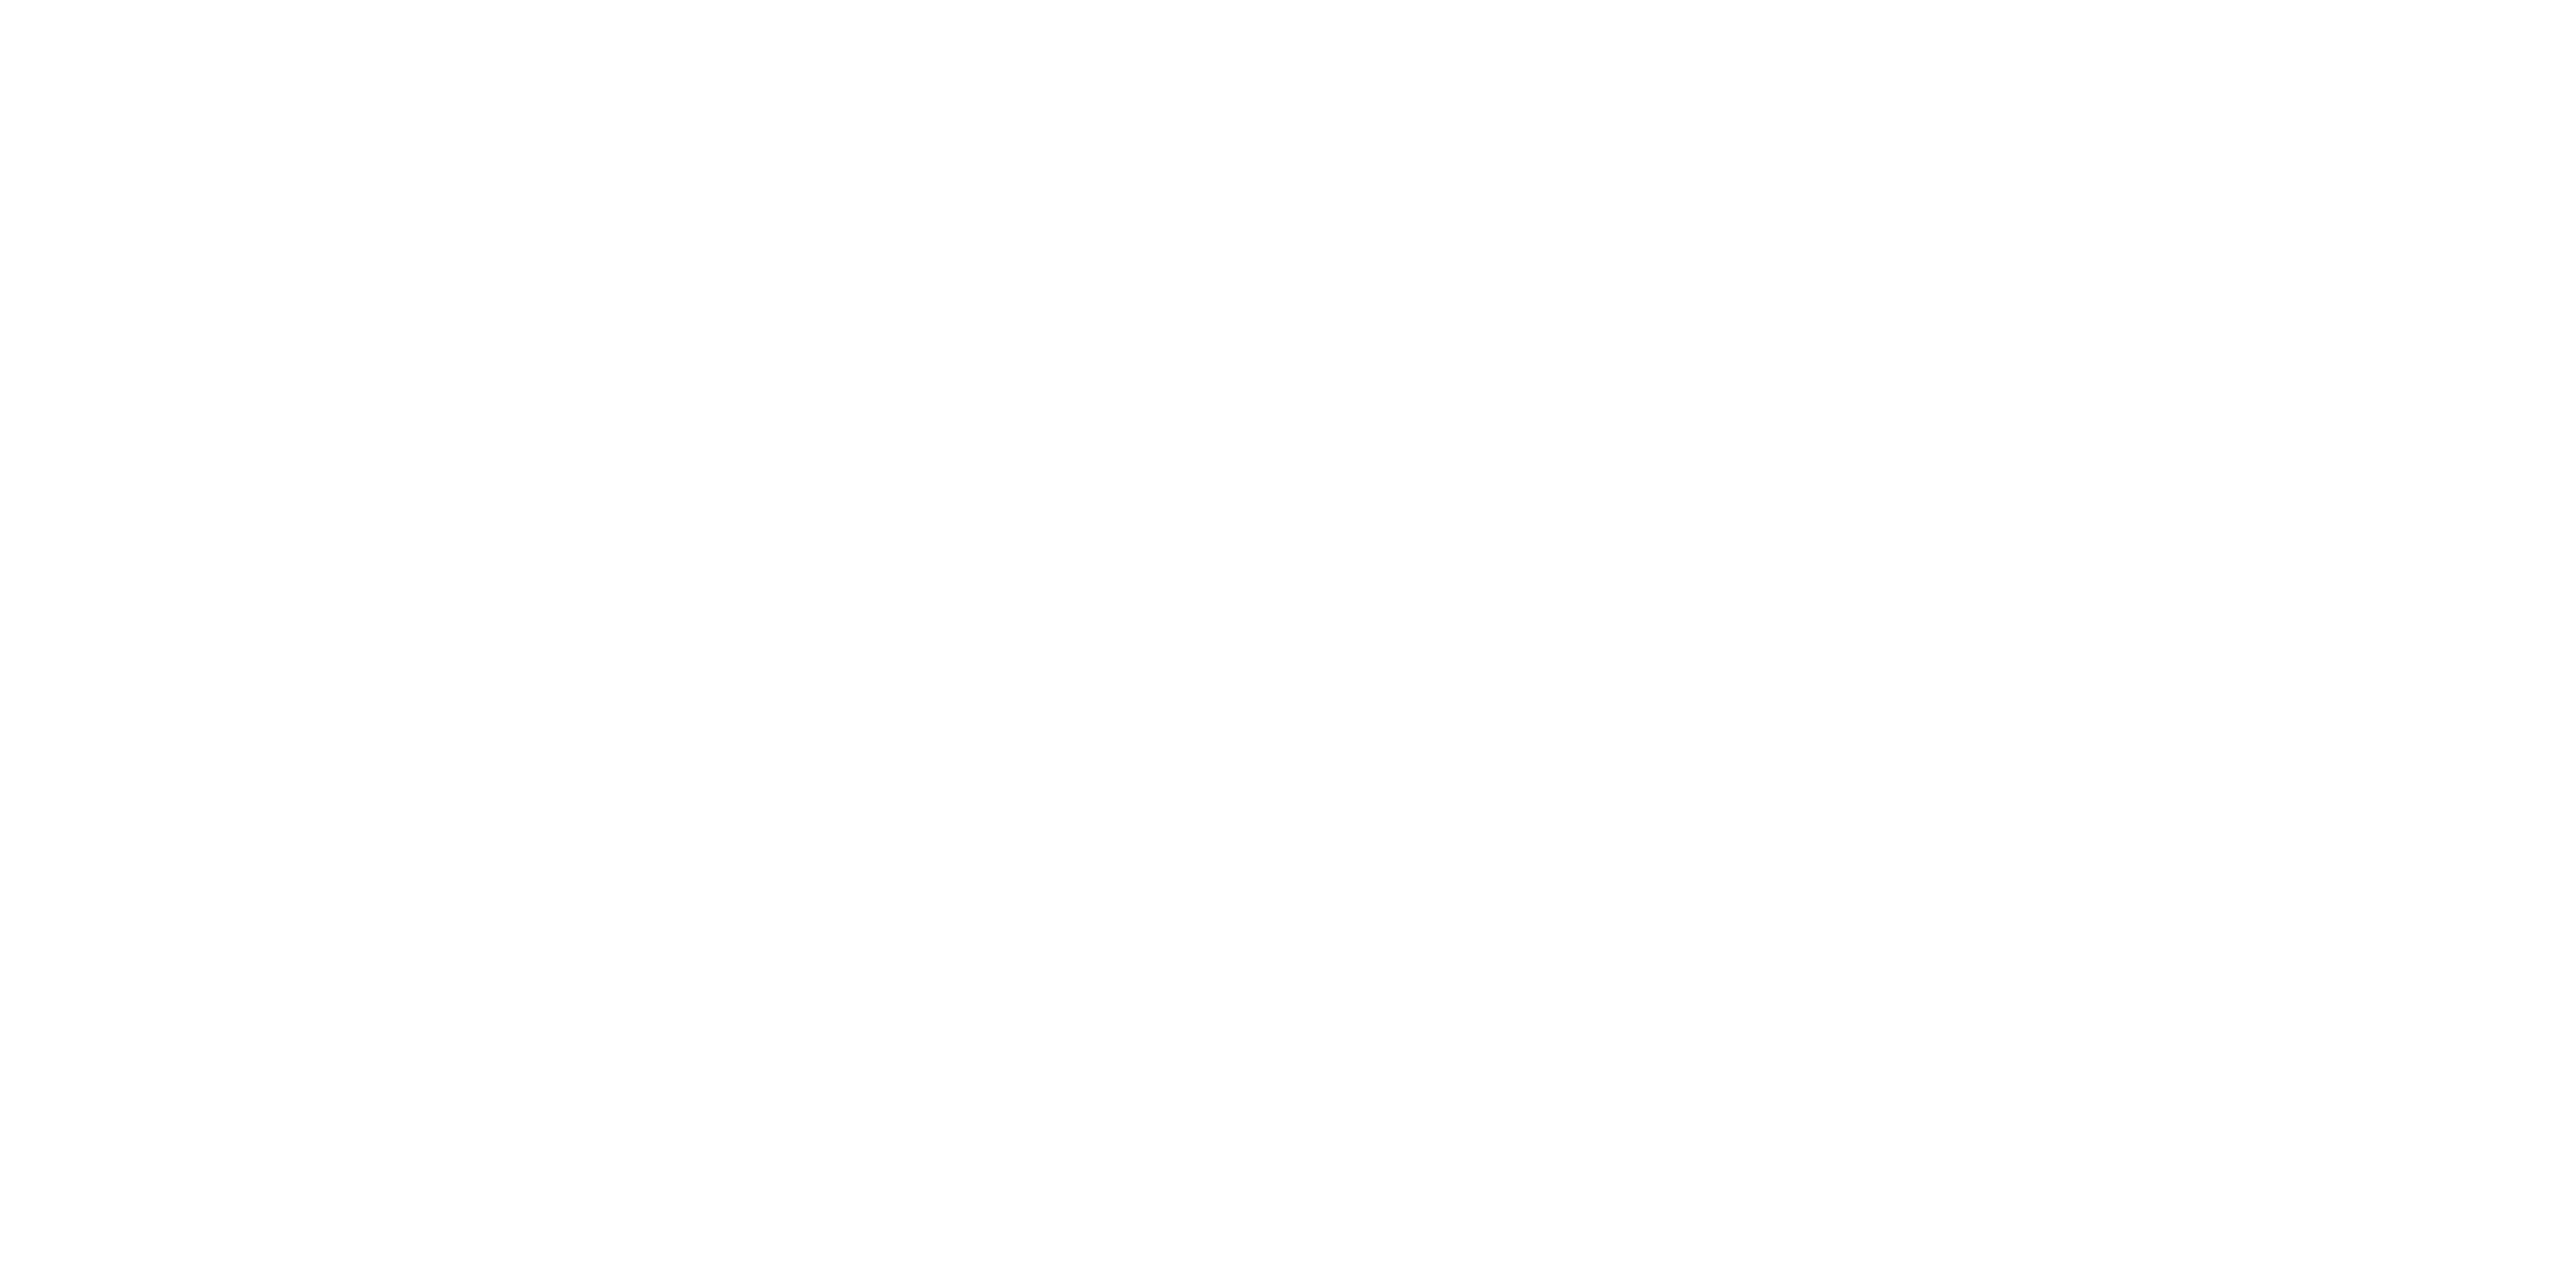 Atria Hotel Gading Serpong logo